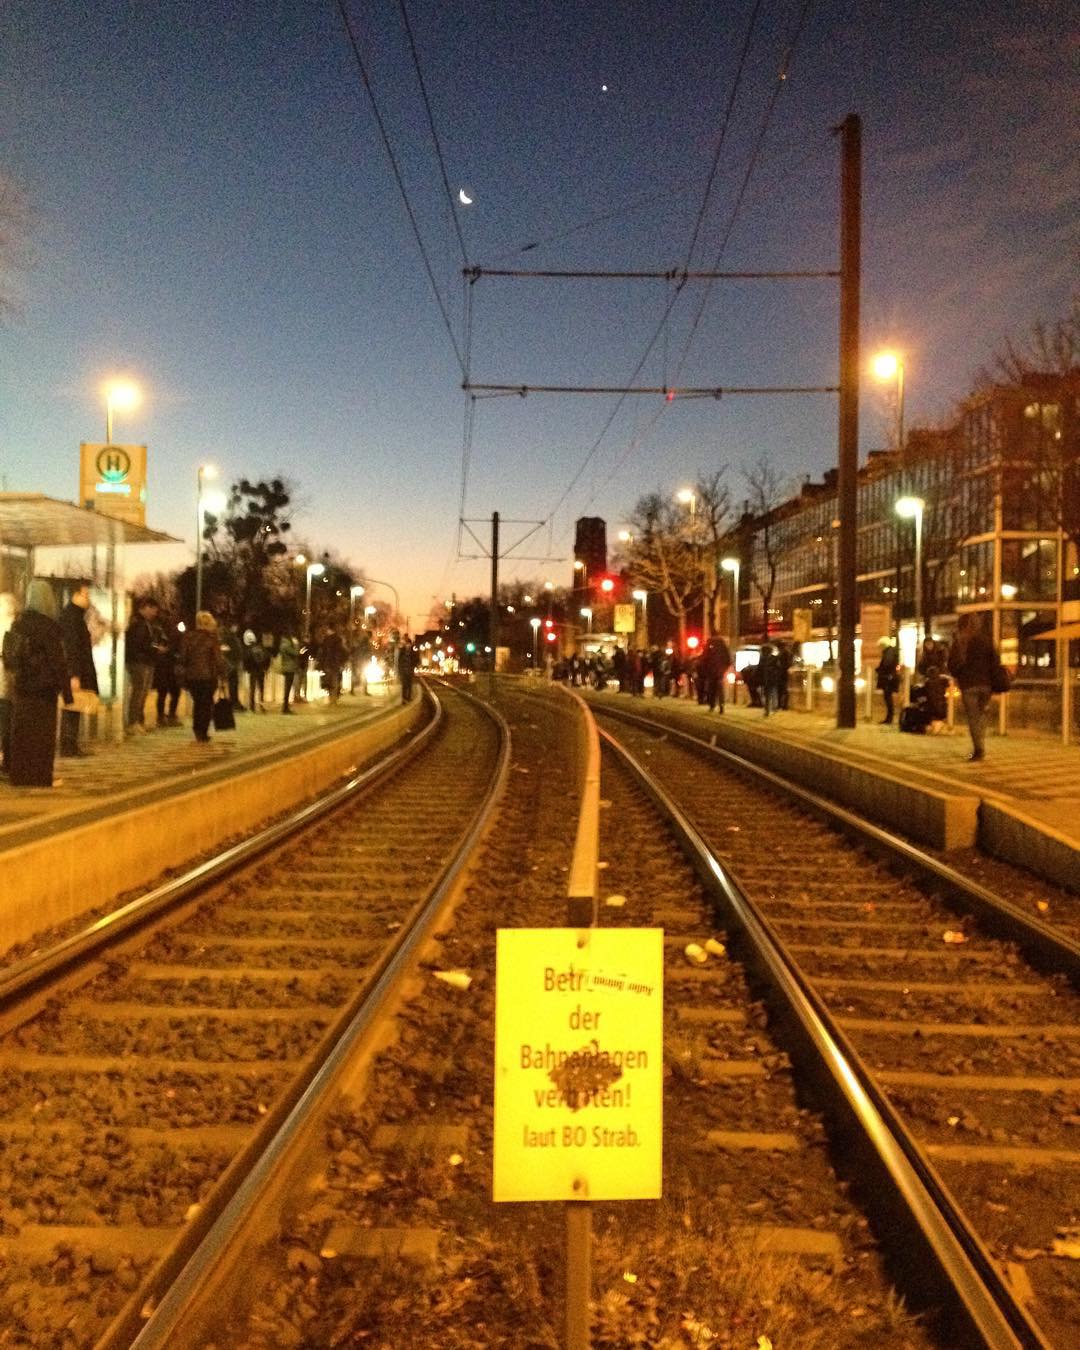 Betreten der Bahnanlagen verboten #Düsseldorf #Holthausen #Haltestelle #Mondsichel #Gleise